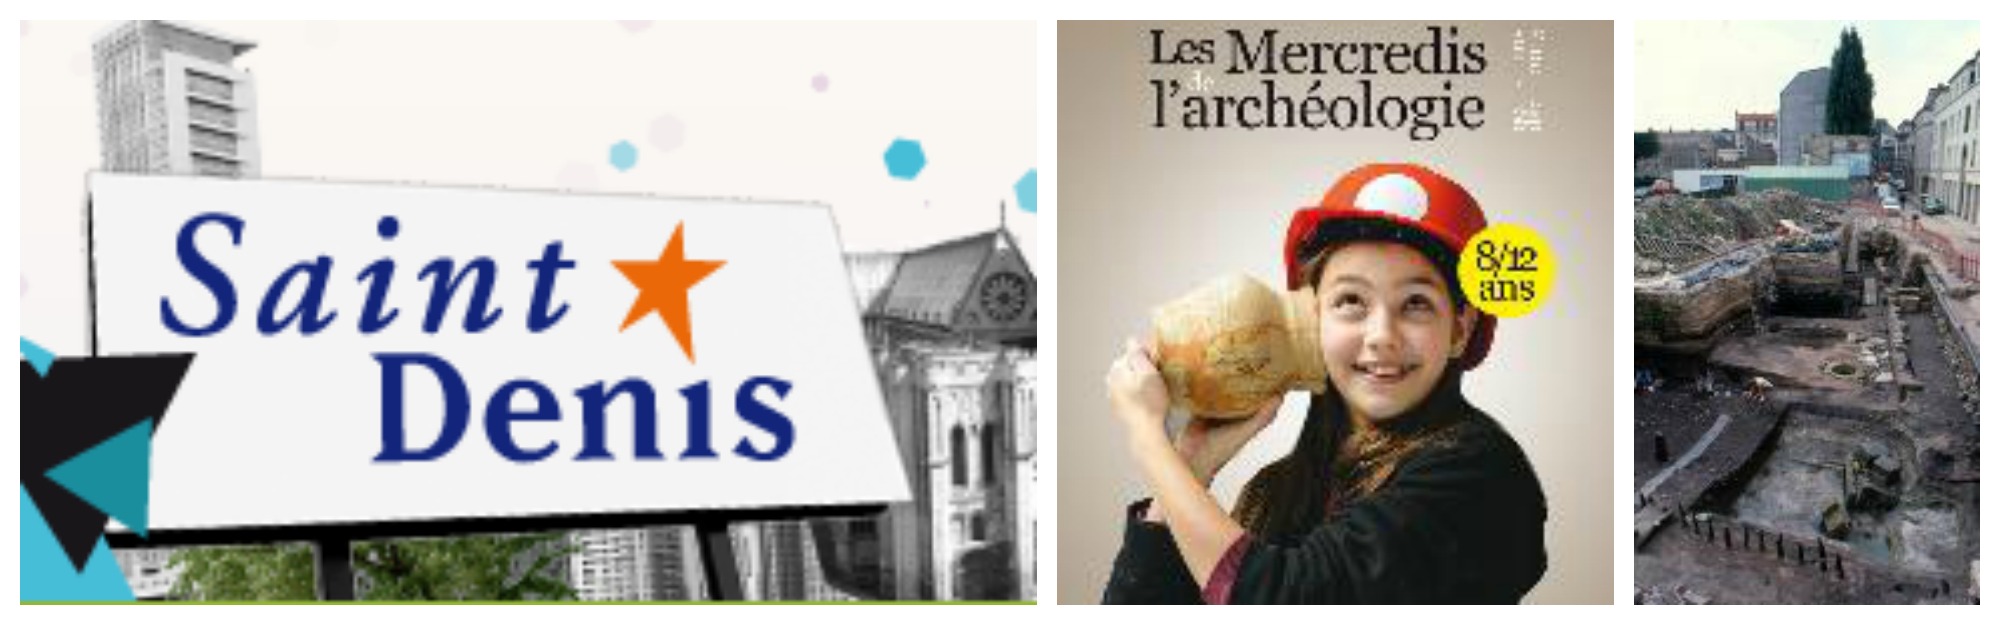 Paris automne 2015 - Les Mercredis de l'Archéologie - Expressions d'Enfants